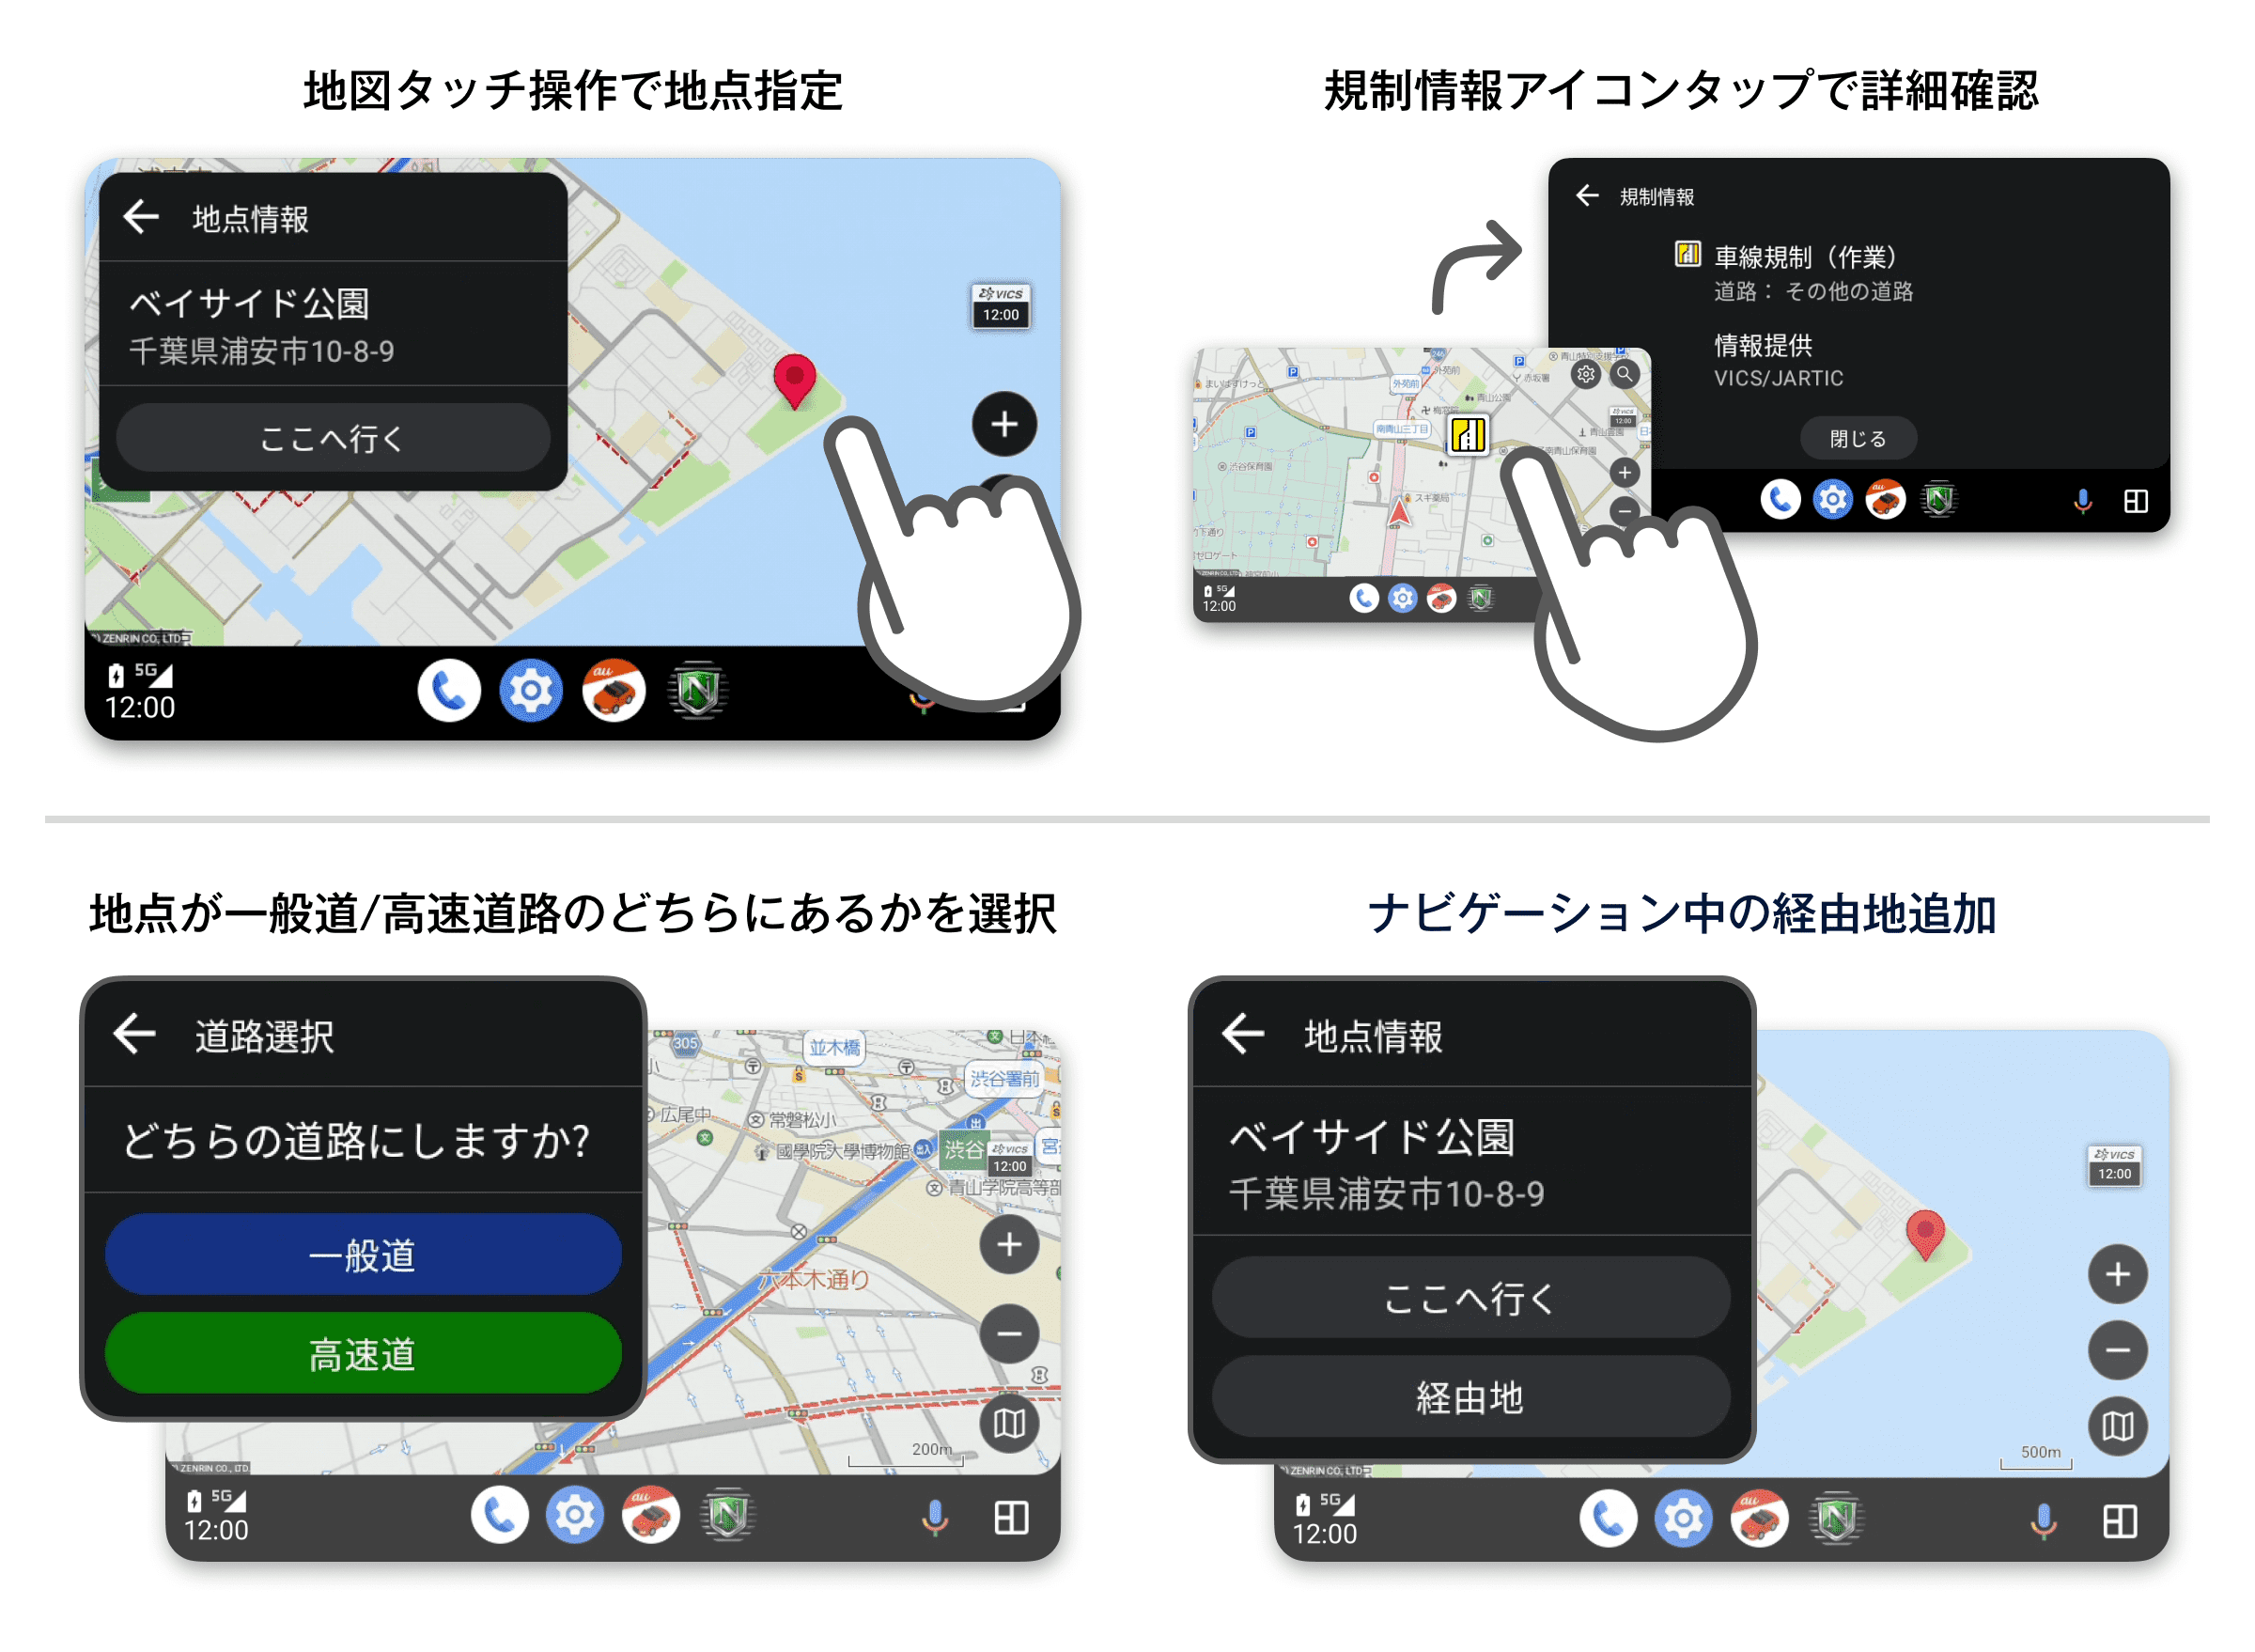 『auカーナビ』『カーナビタイム』Android Auto にて、ディスプレイ上の地図のタッチ操作が可能に